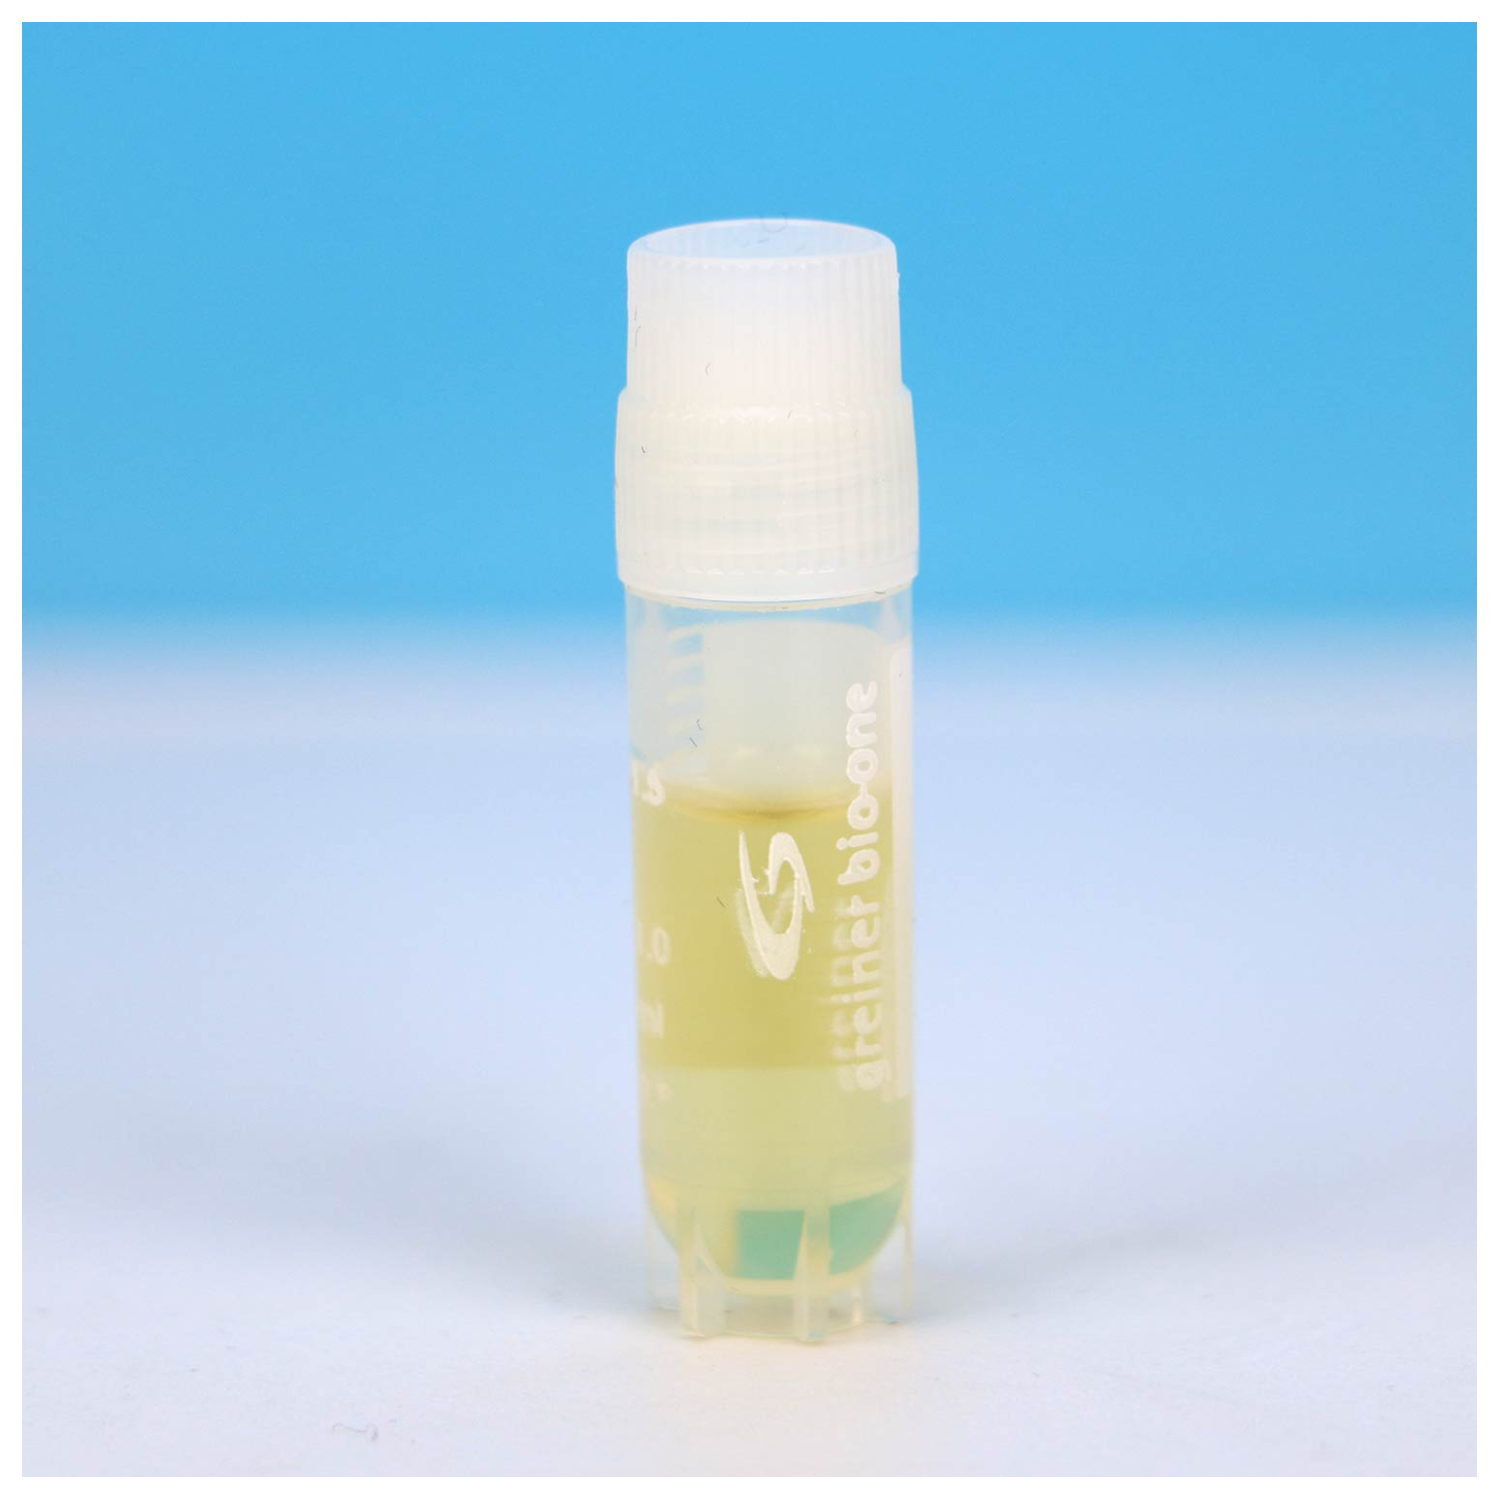 液体菌种保存管(不含瓷珠)(40%甘油)  	HBPT001-5